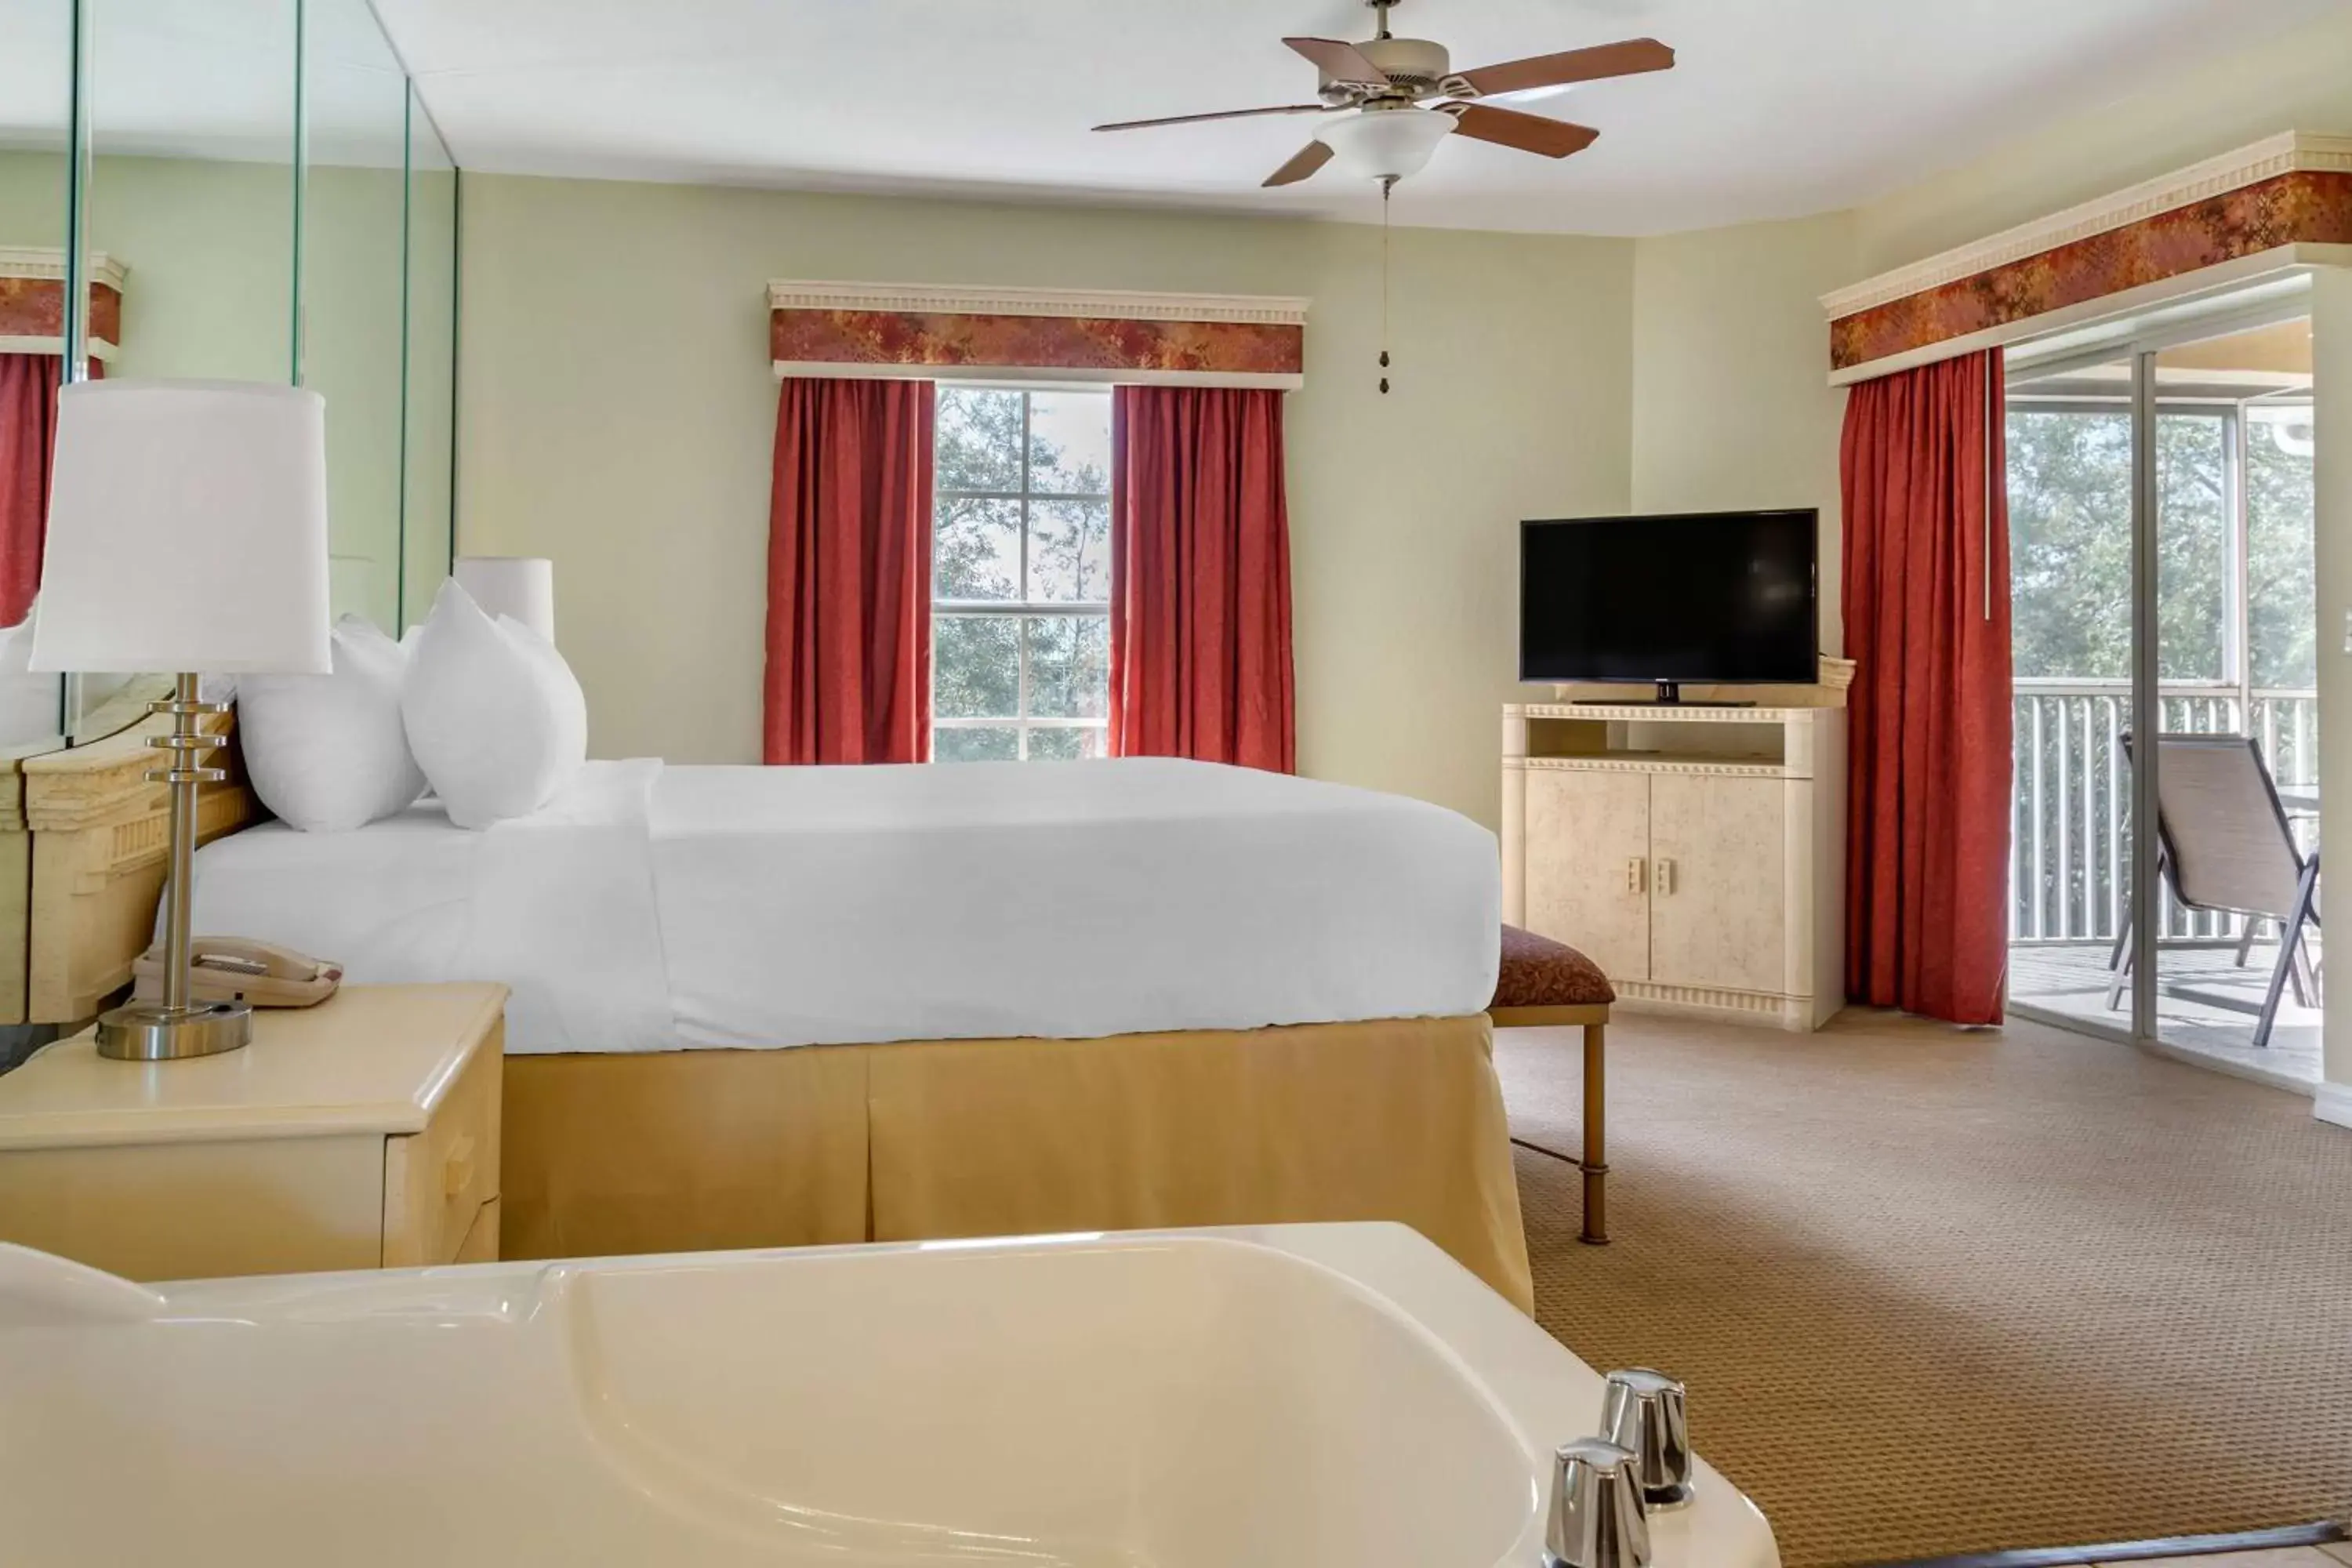 Bathroom, Bed in Hilton Vacation Club Mystic Dunes Orlando